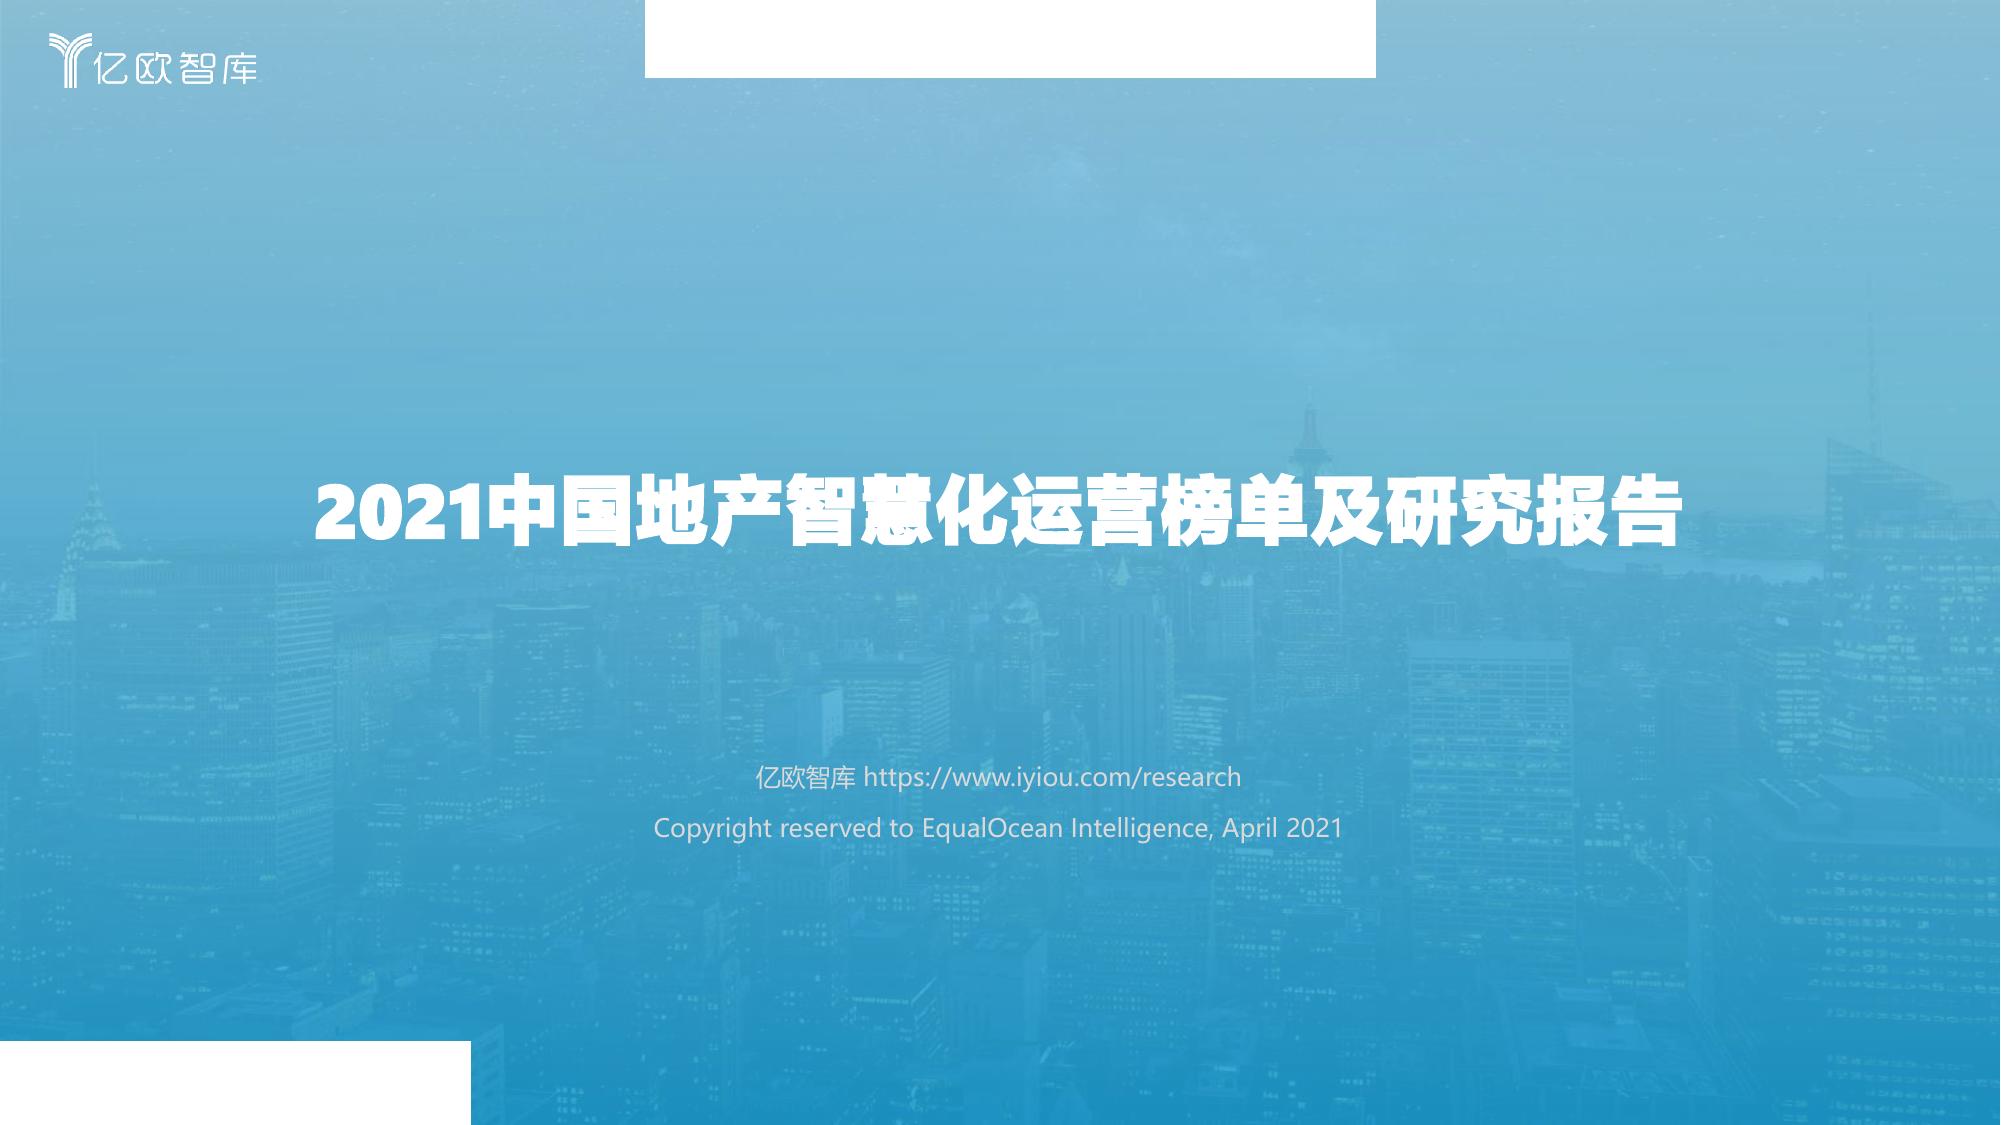 亿欧智库--亿欧智库2021中国地产智慧化运营榜单及研究报告-2021-05-10